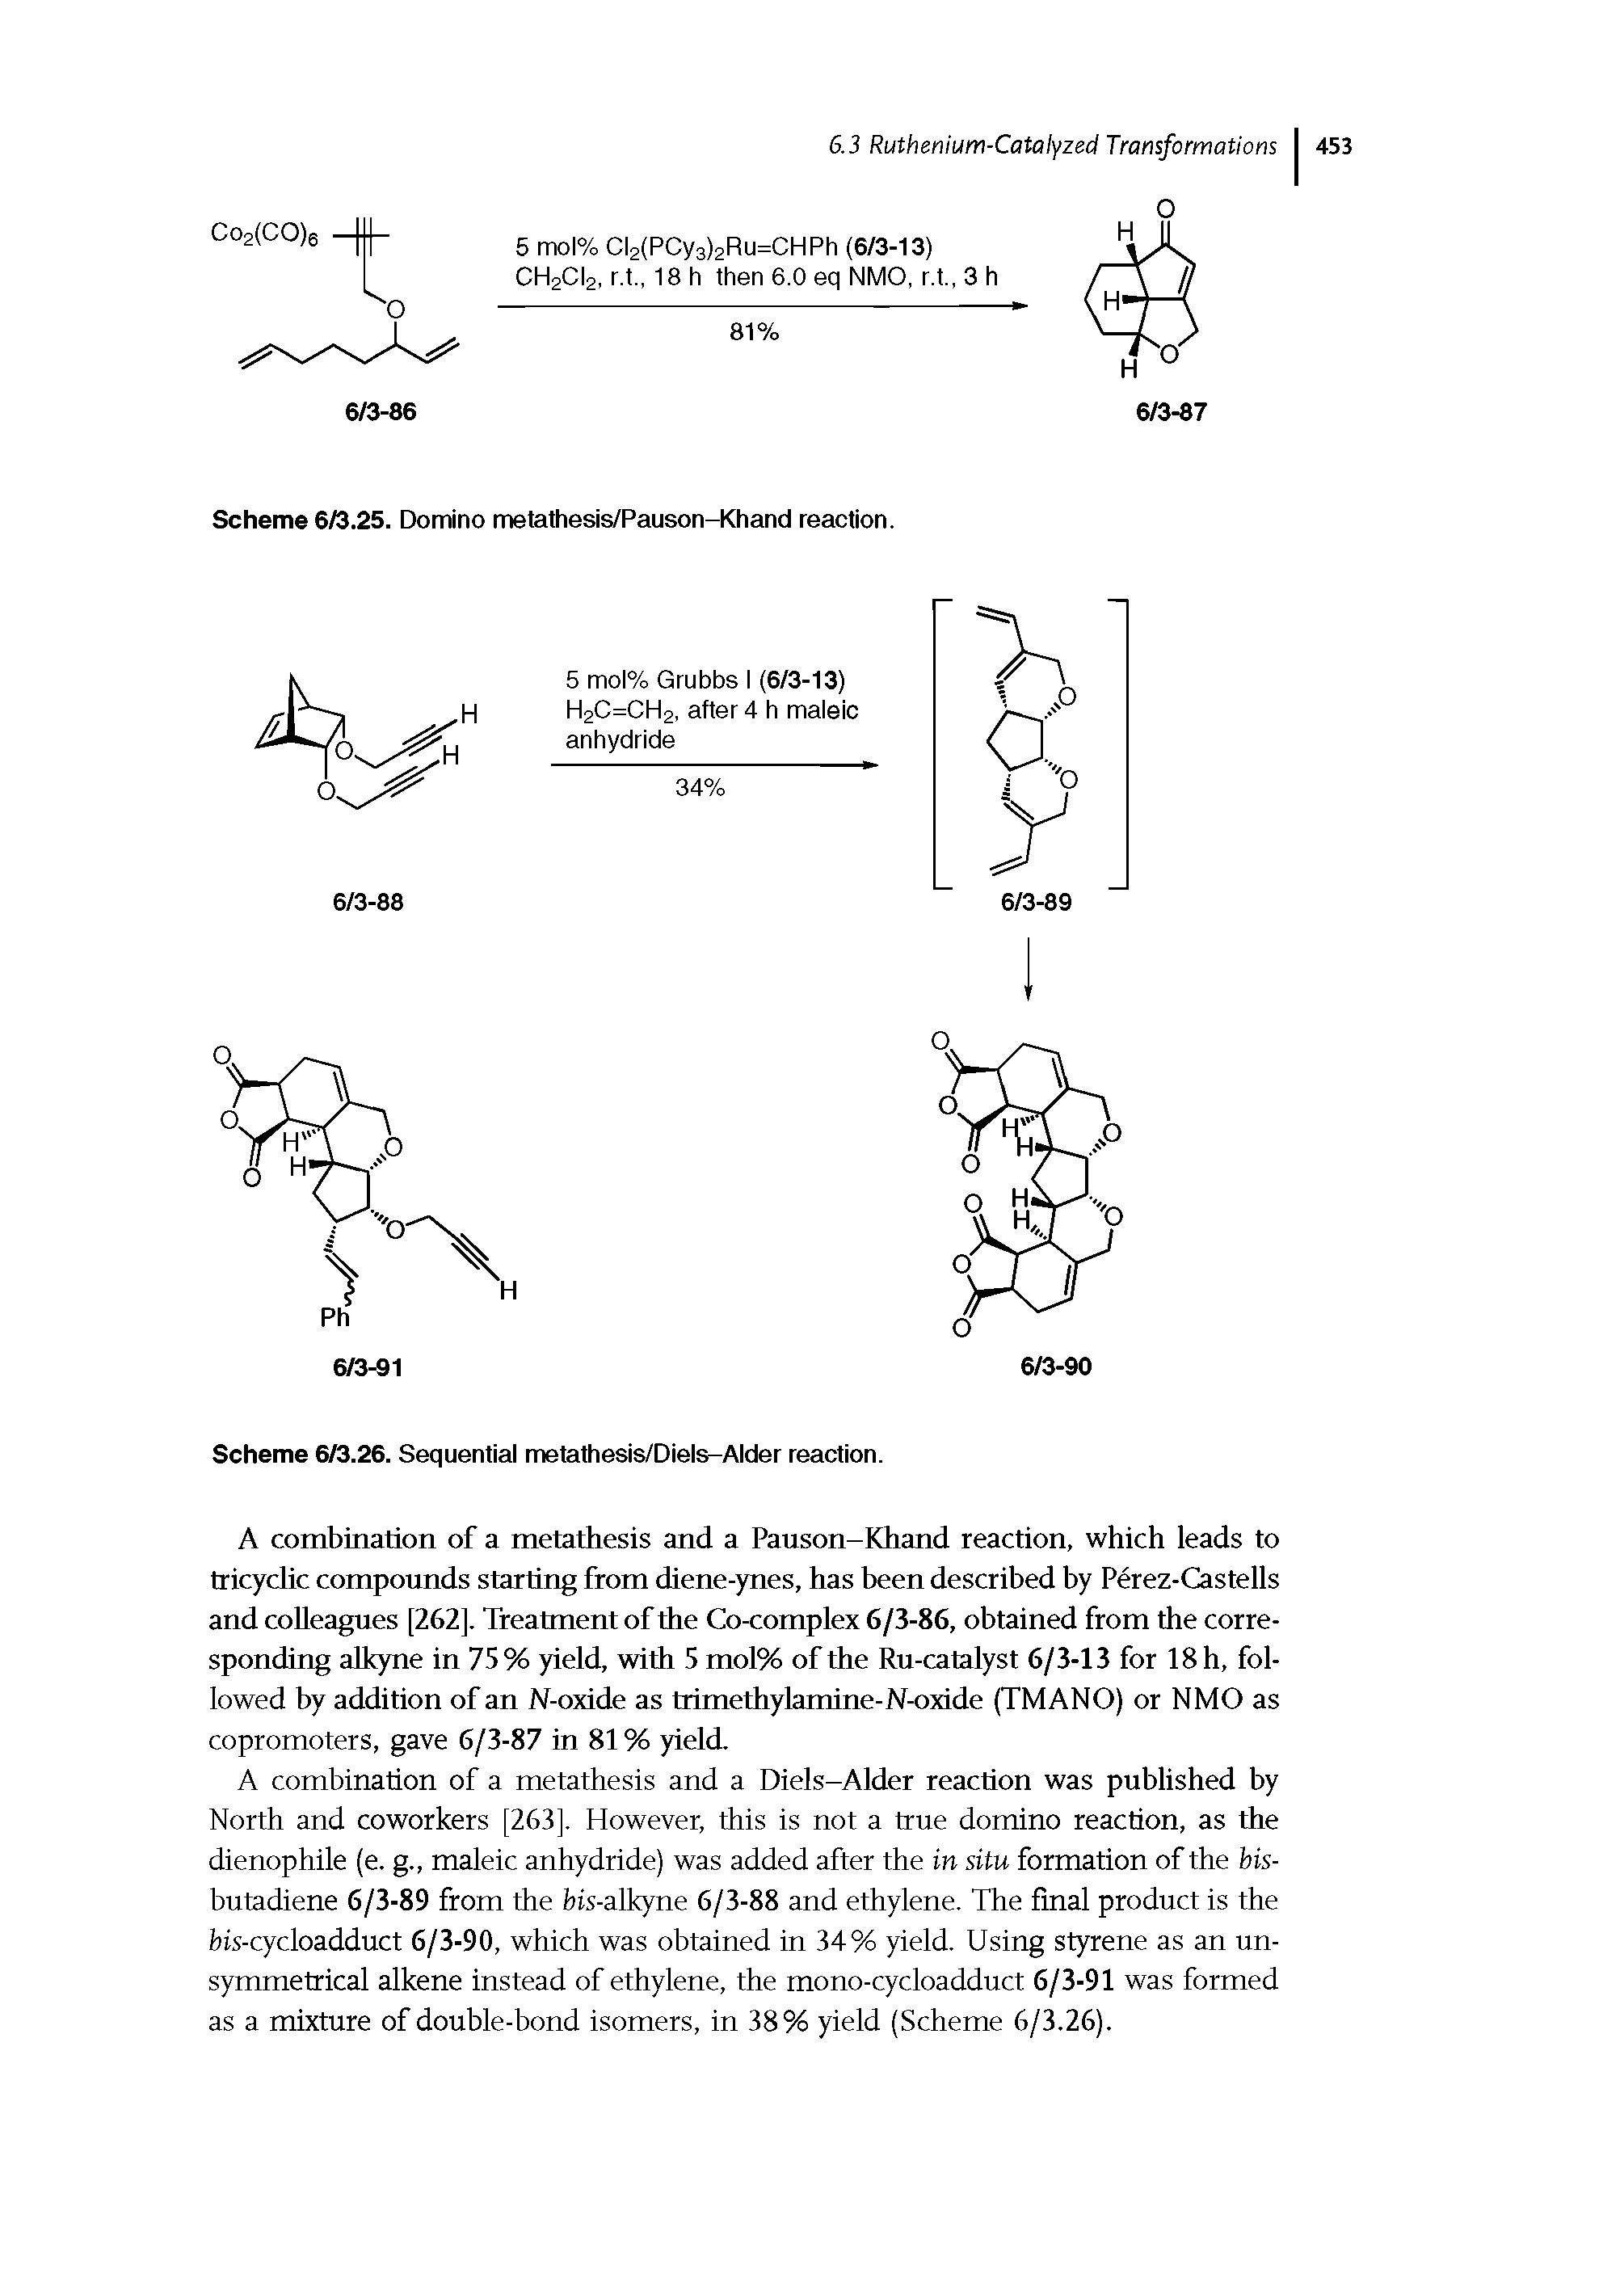 Scheme 6/3.26. Sequential metathesis/Diels-Alder reaction.